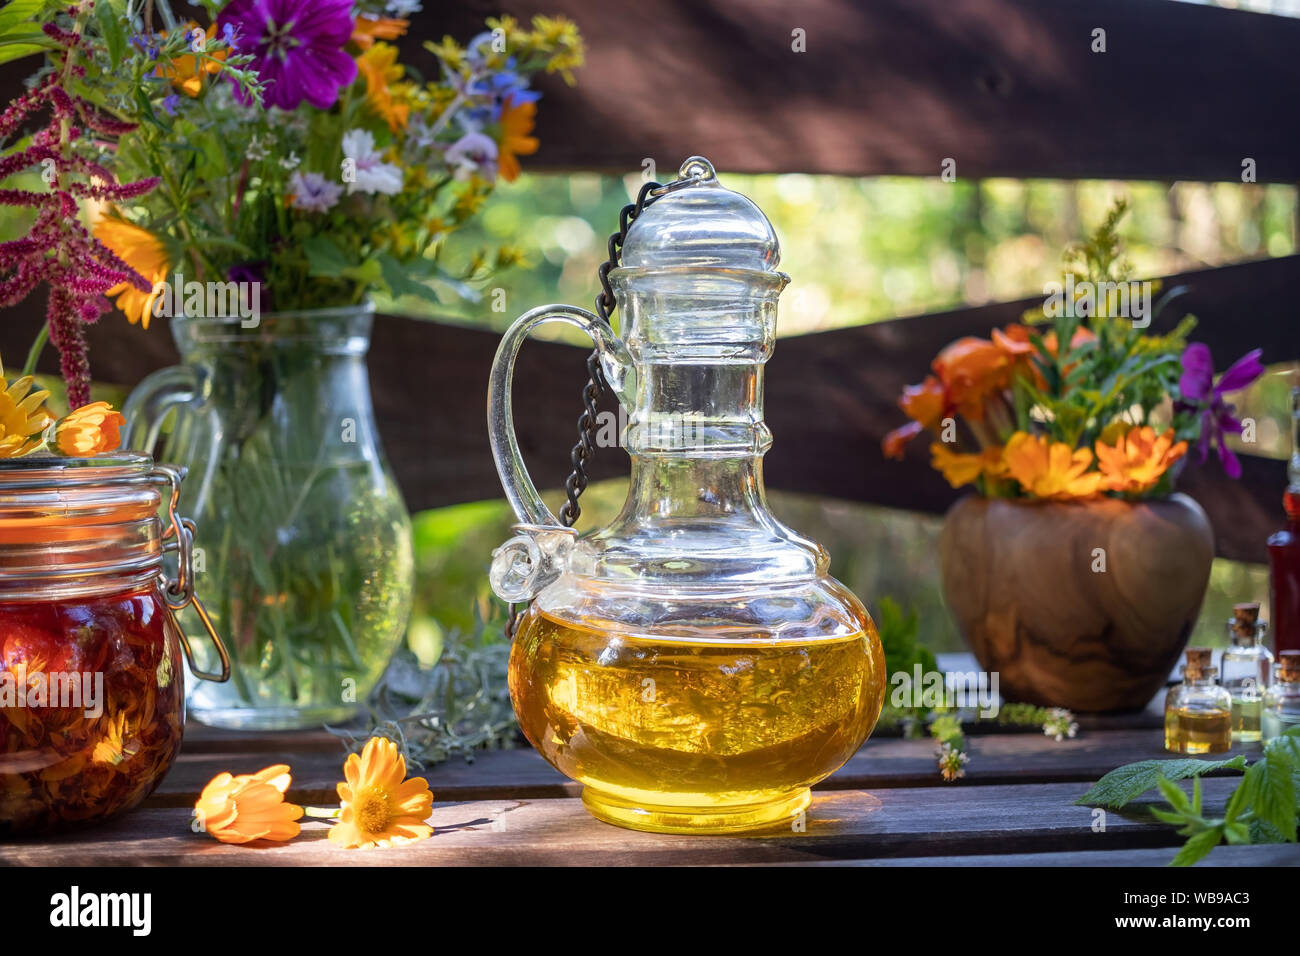 Flaconi di medicinali a base di erbe e oli essenziali, con fresche piante medicinali e fiori in background Foto Stock